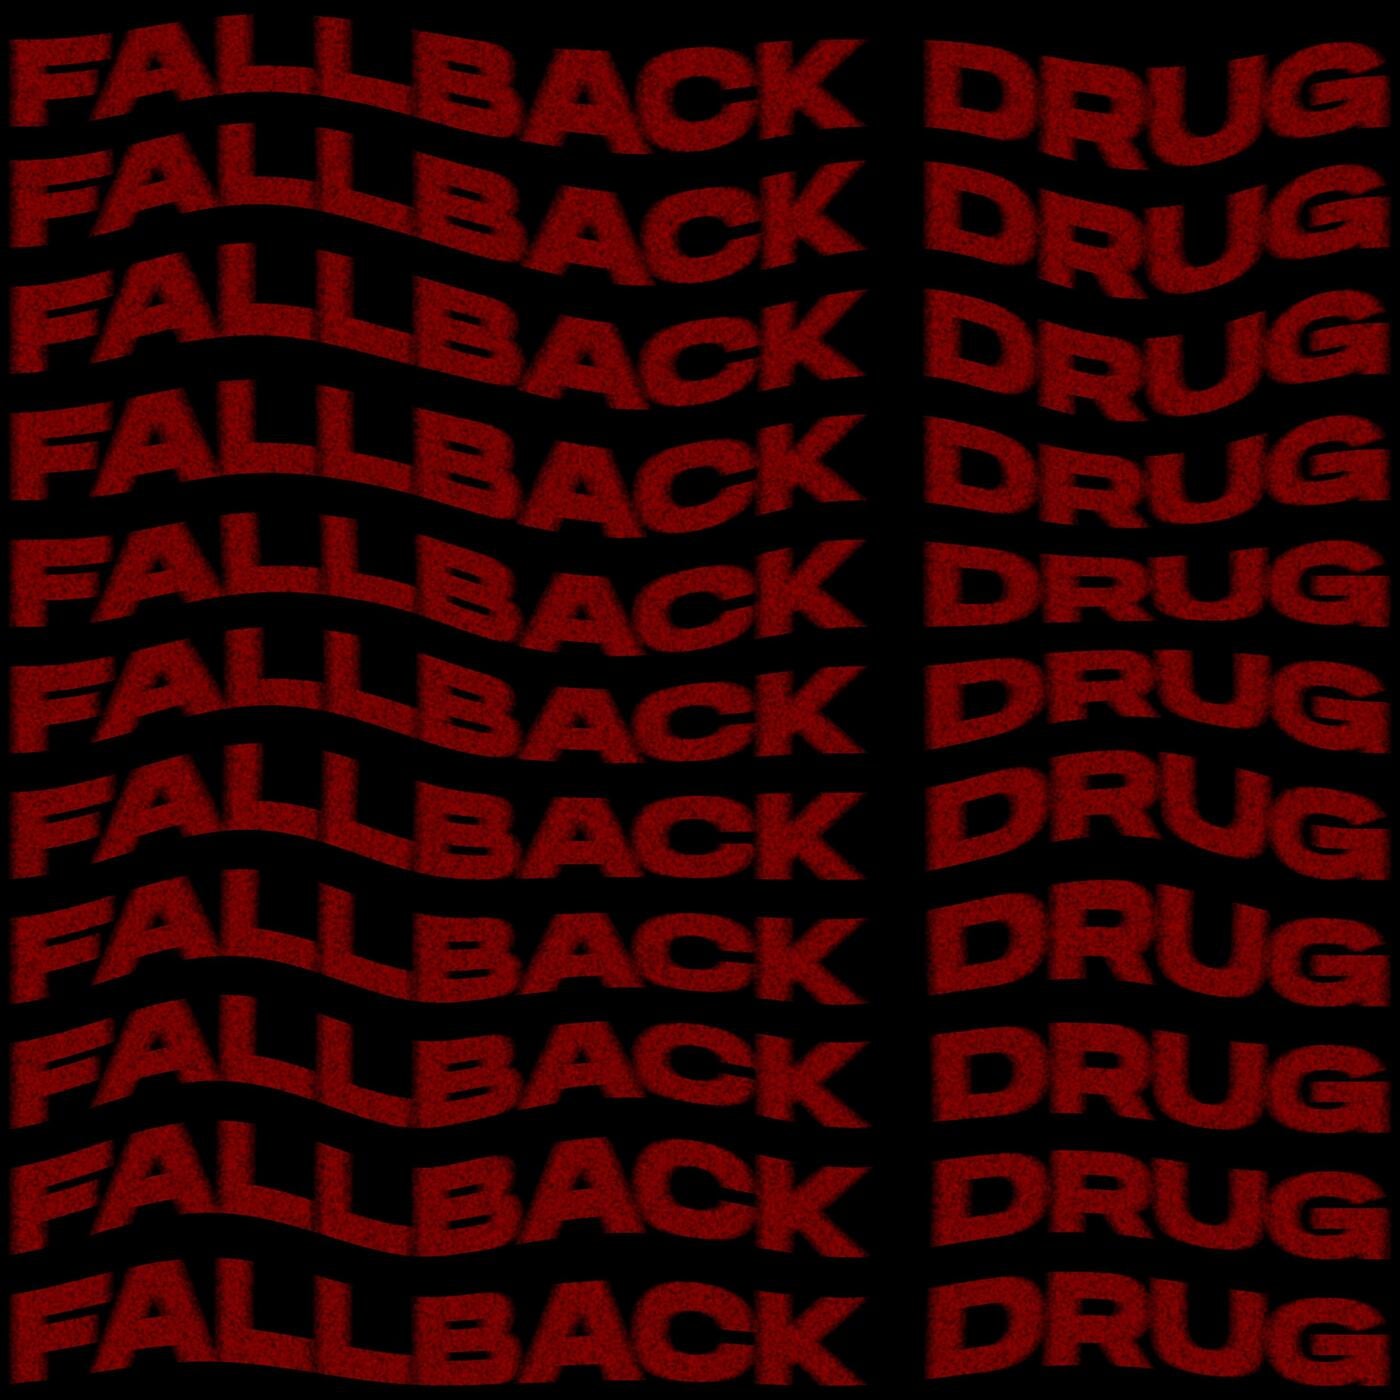 Fallback Drug